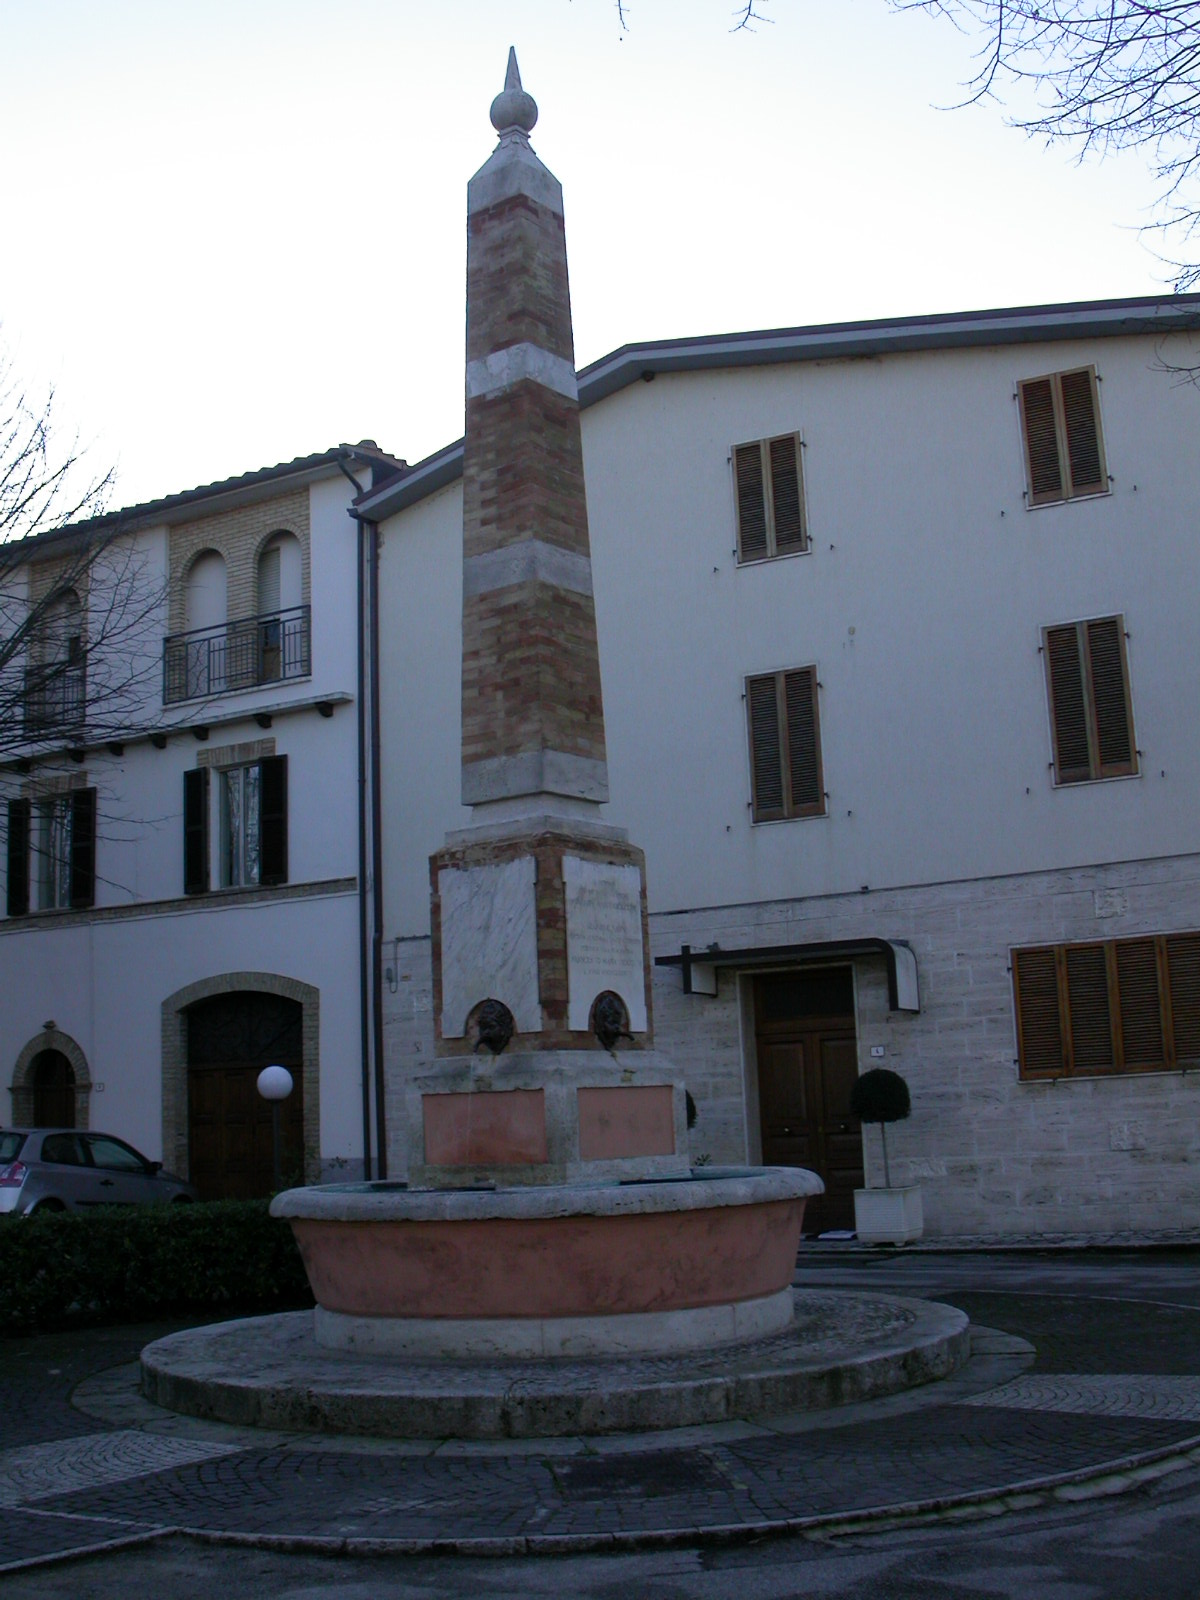 Fontana pubblica (fontana, pubblica) - Rotella (AP) 